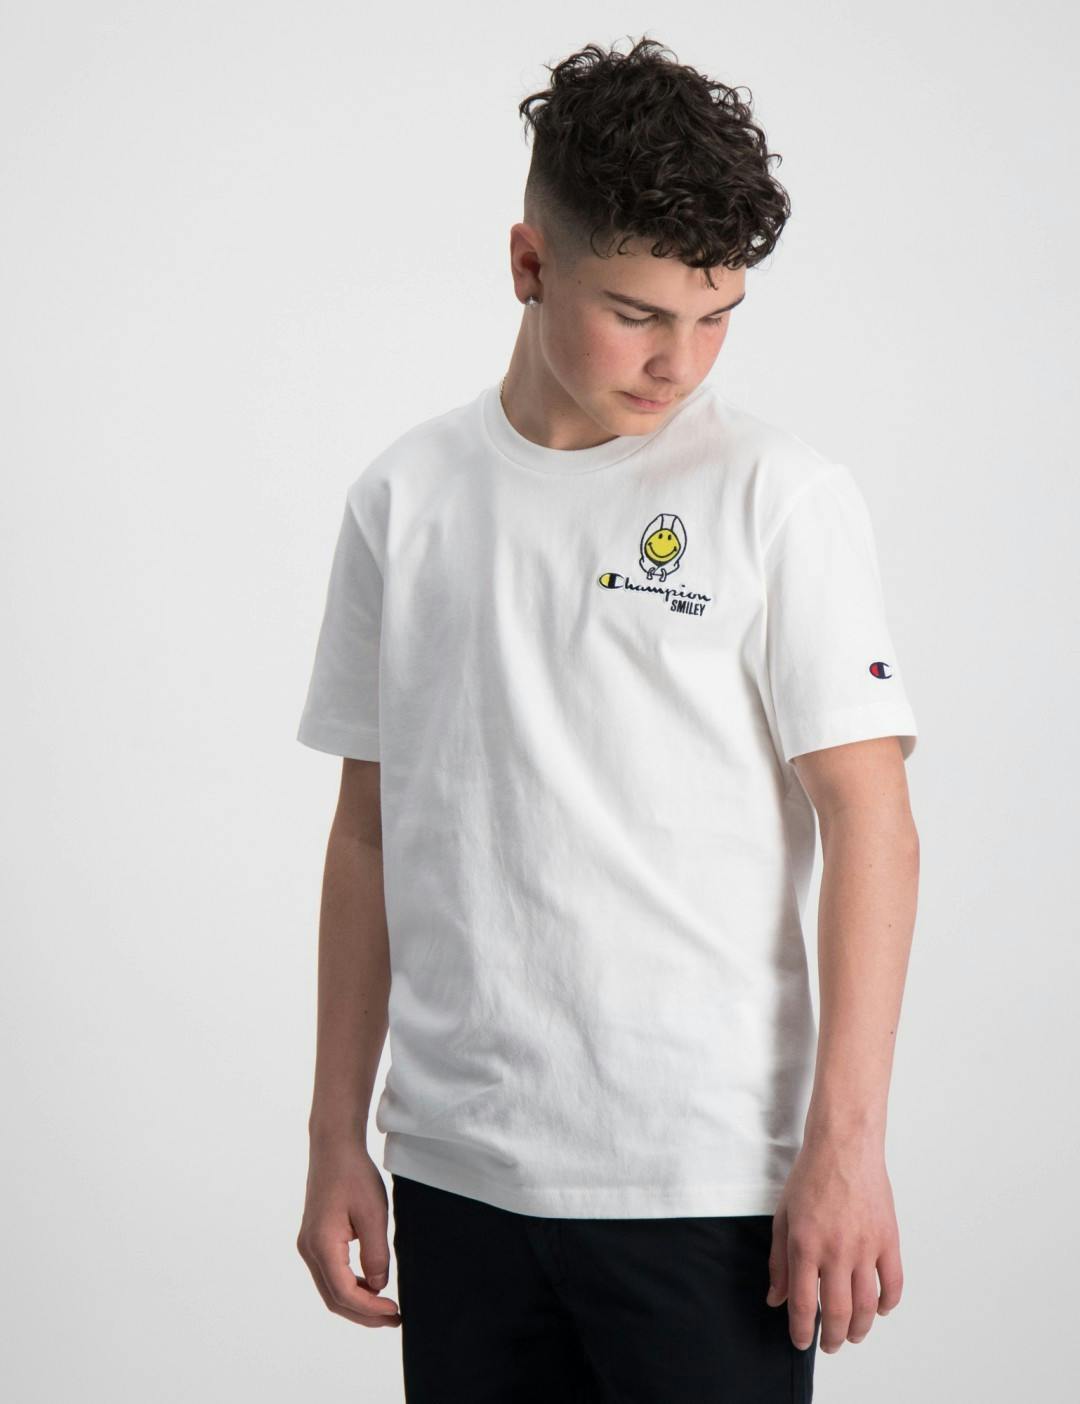 Weiß Crewneck T-Shirt für Jungen | Kids Brand Store | Sport-T-Shirts